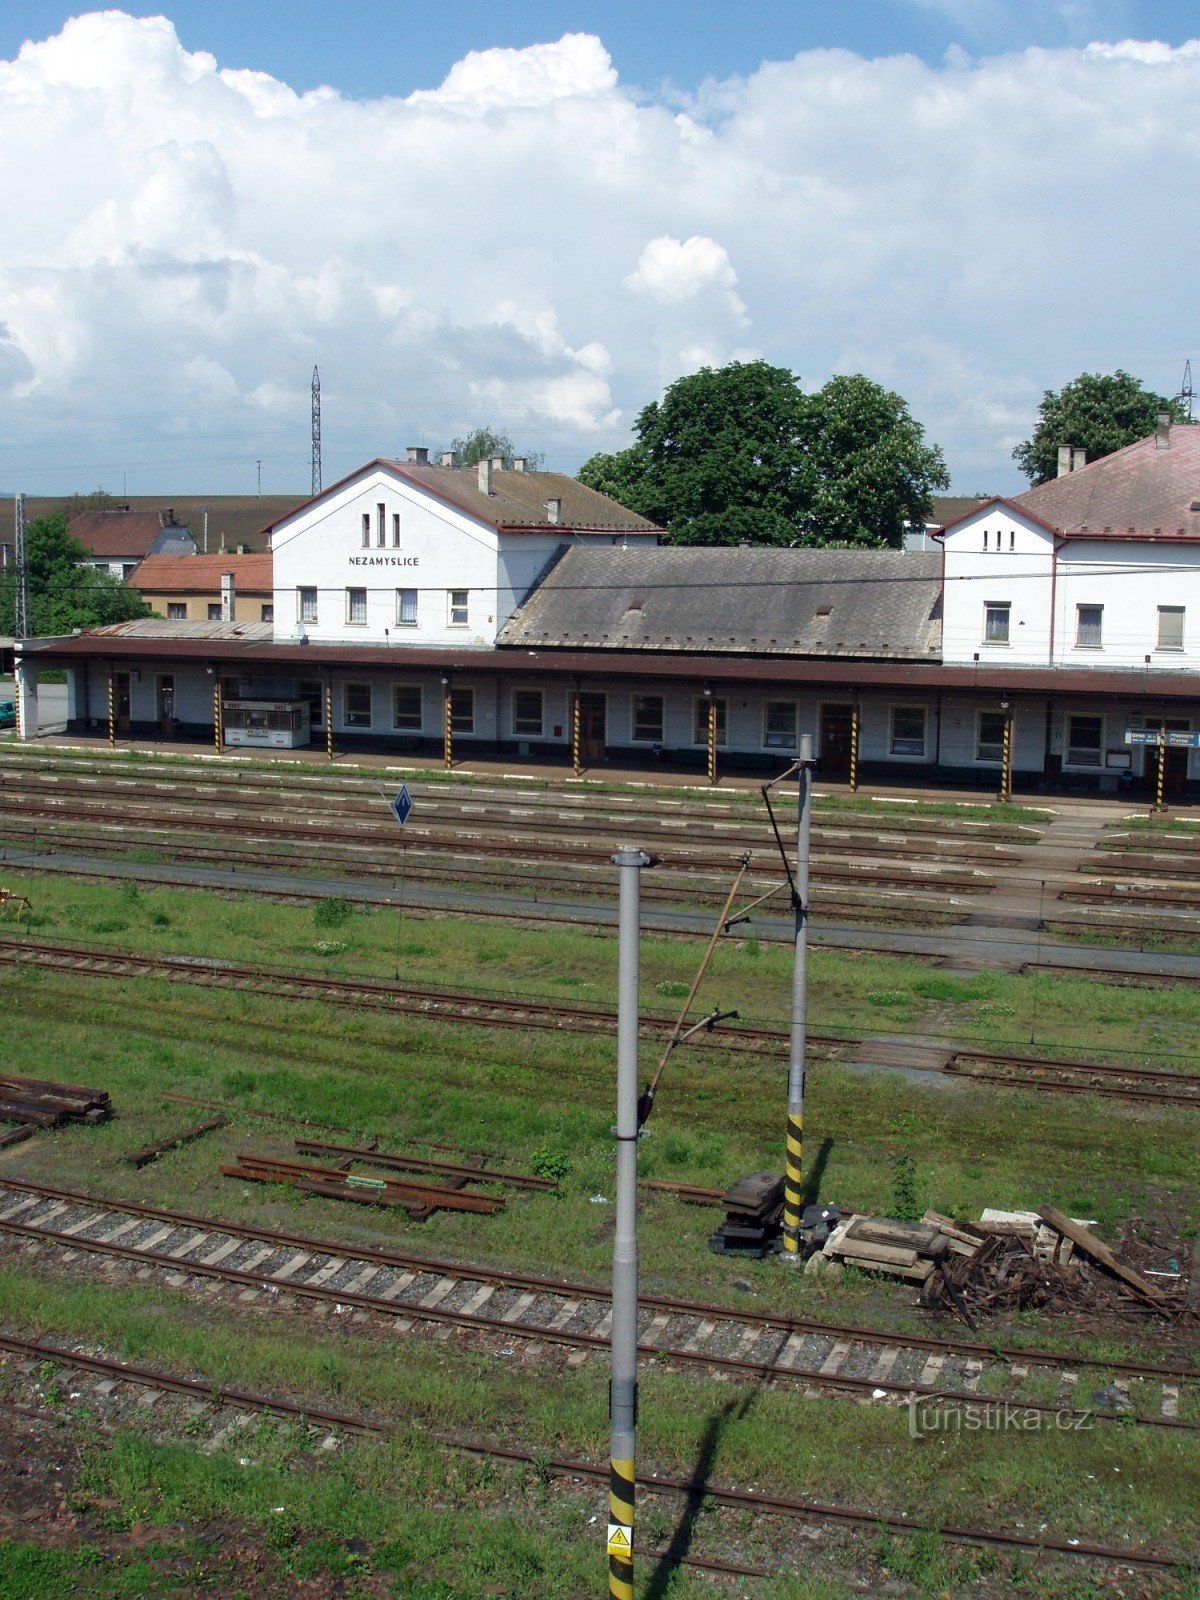 Σιδηροδρομικός σταθμός Nezamyslice από την πολυκατοικία